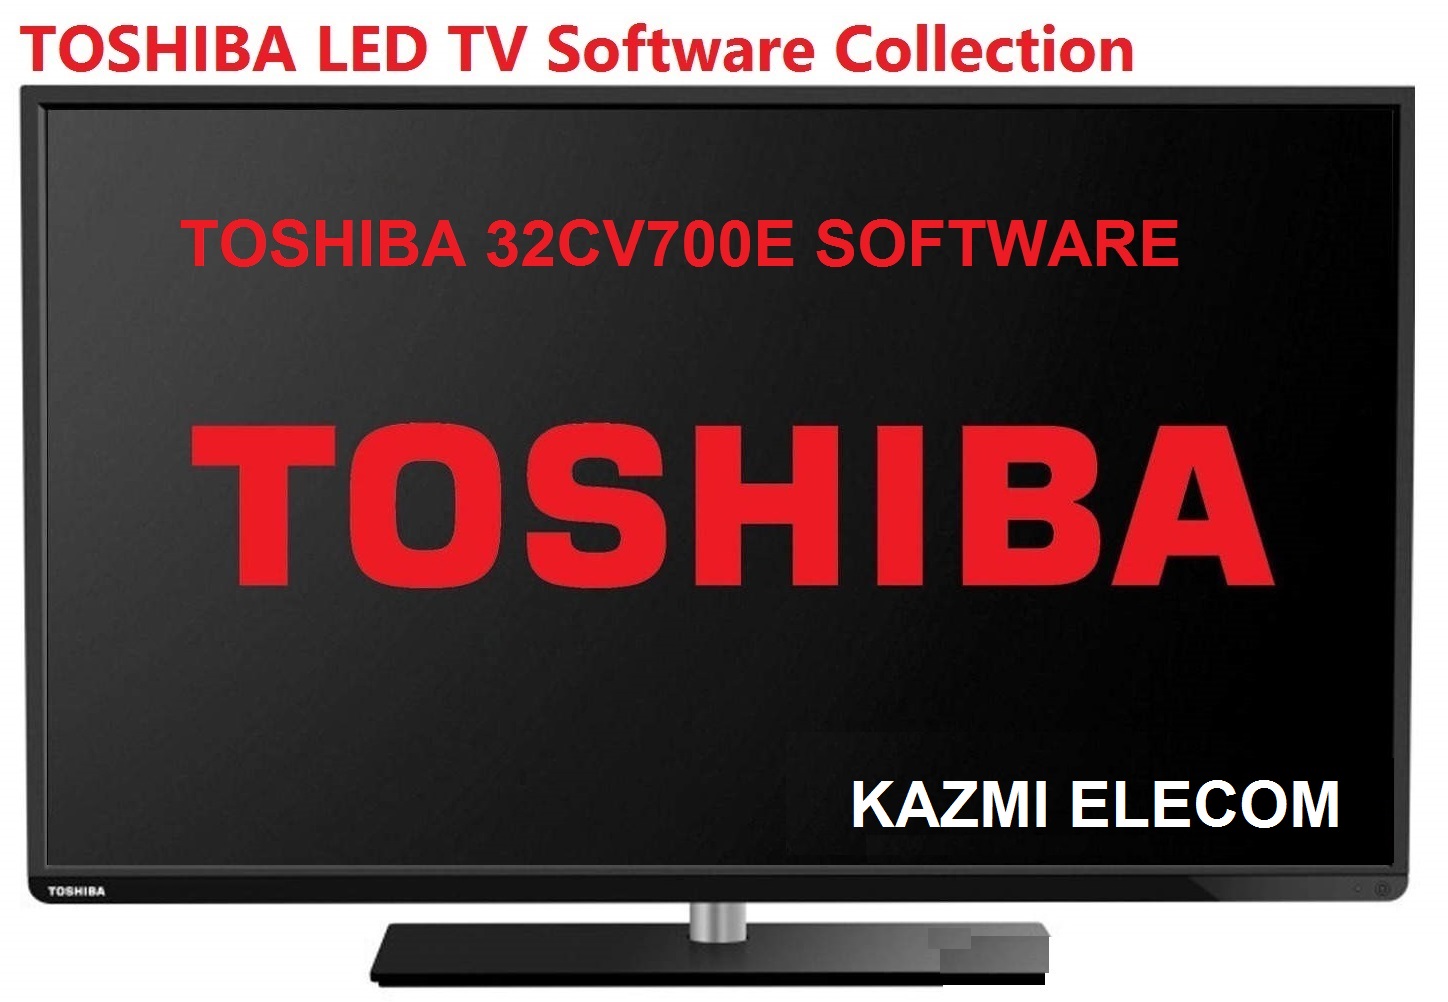 Toshiba 32Cv700E